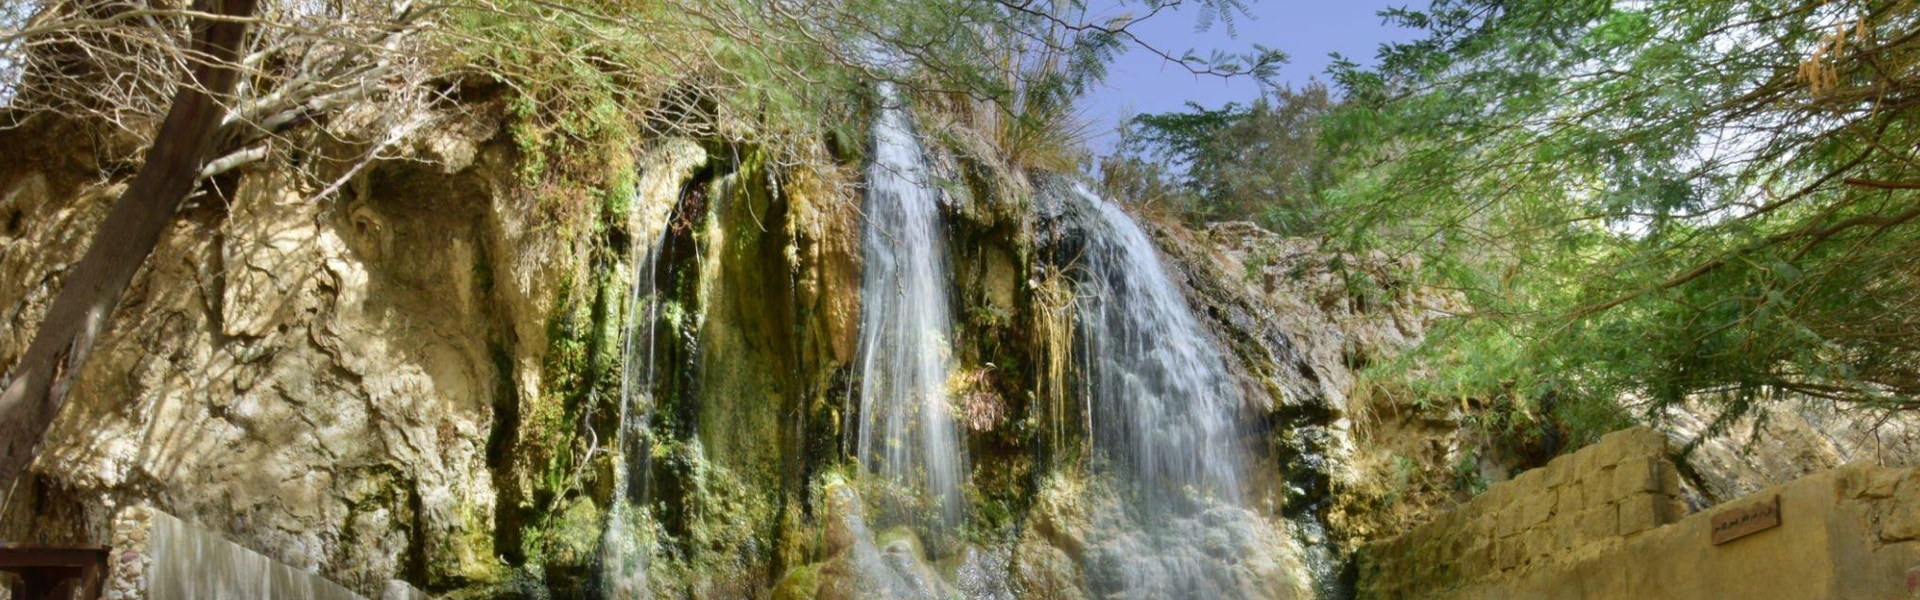 Ma'in Hot Springs in Jordan